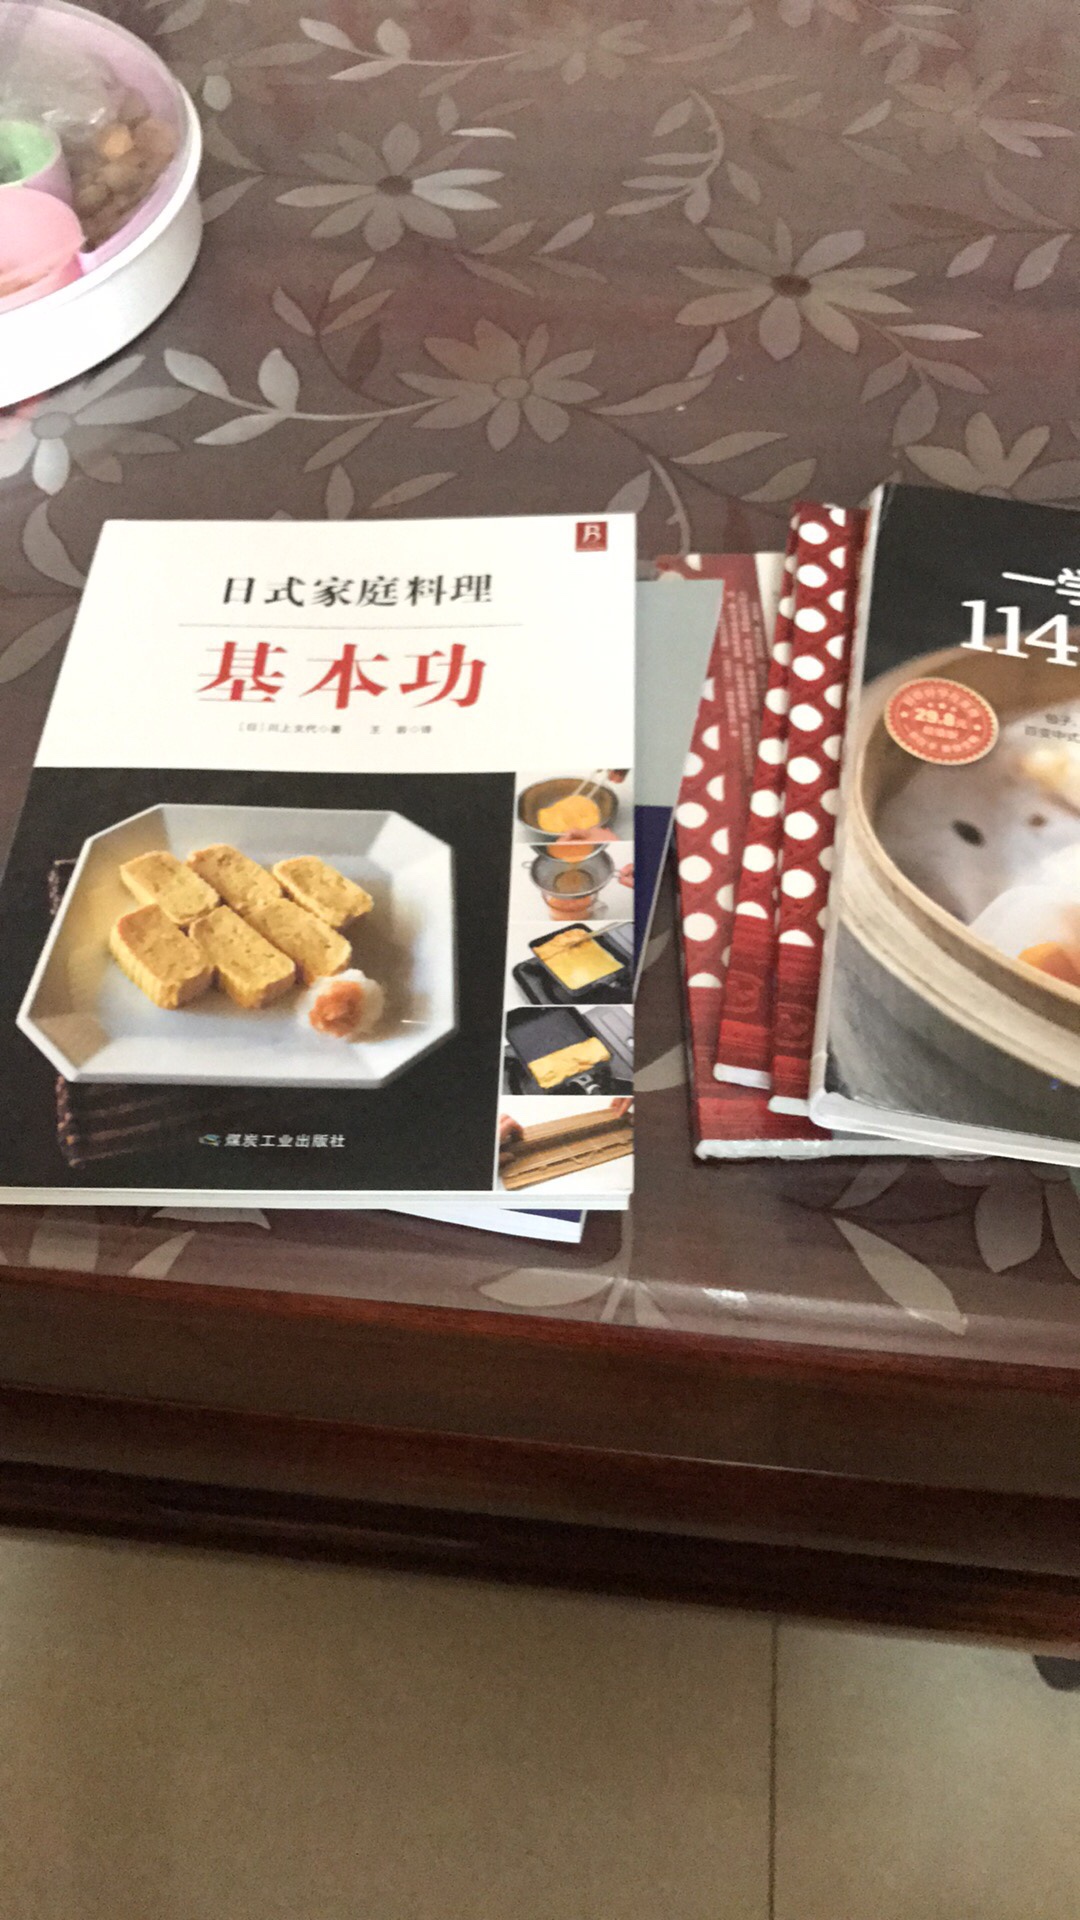 川上文代的书很好，技巧很实用，希望以后能更好的学习做饭的技巧。